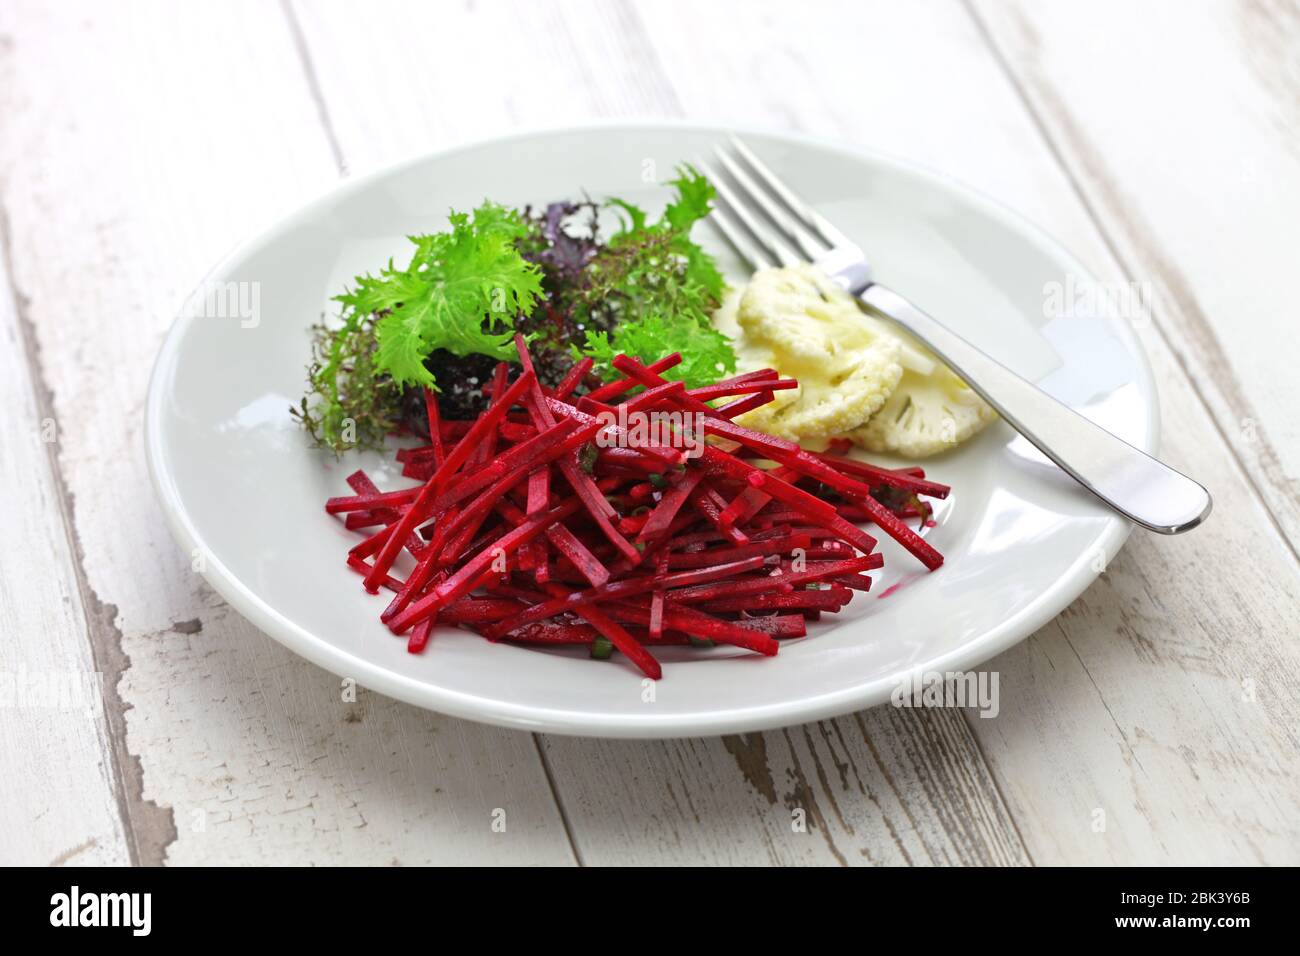 salade de dendroctone de julienne, cuisine végétarienne saine Banque D'Images